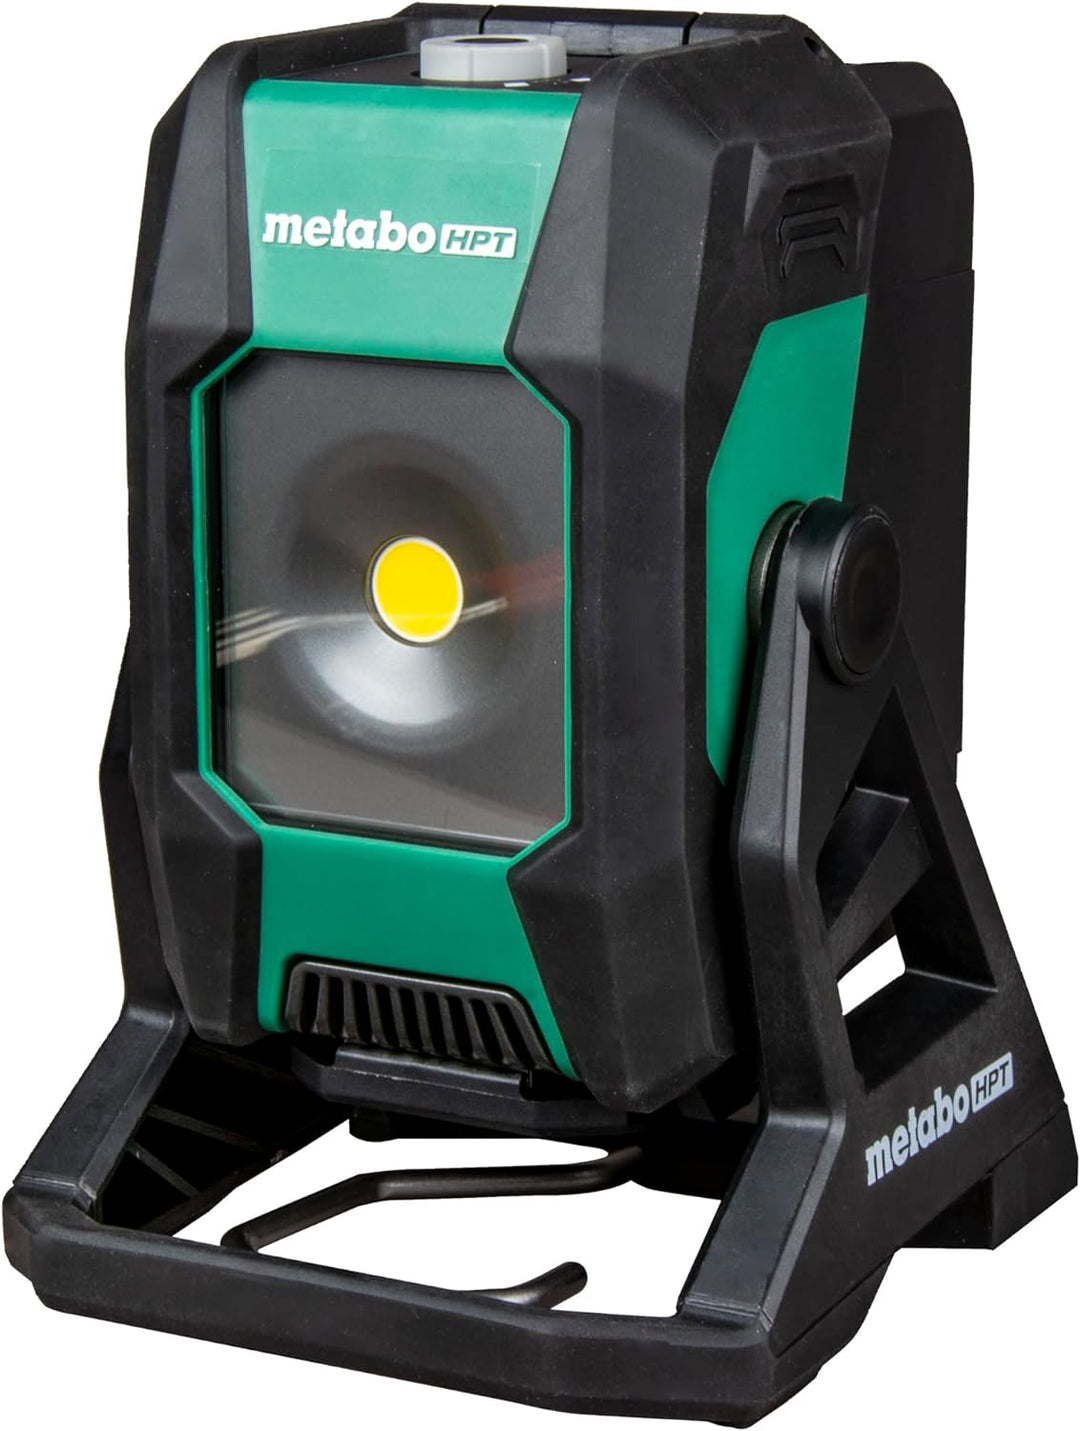 Metabo-HPT 18V MultiVolt Cordless Work Light - Tool Only